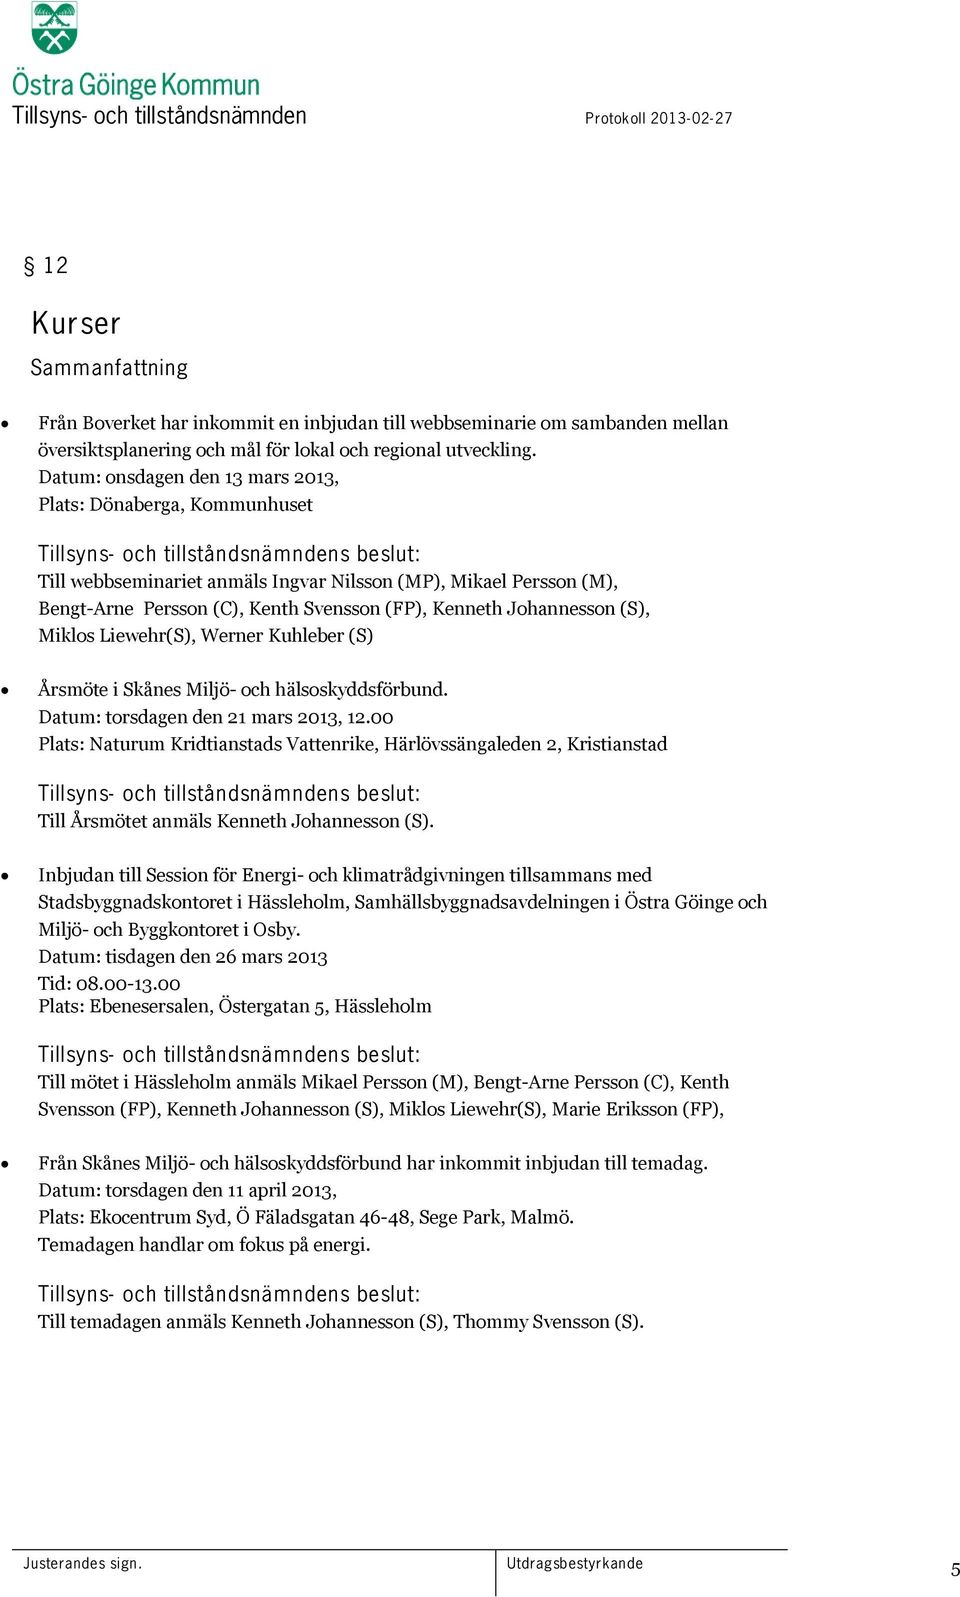 Kenth Svensson (FP), Kenneth Johannesson (S), Miklos Liewehr(S), Werner Kuhleber (S) Årsmöte i Skånes Miljö- och hälsoskyddsförbund. Datum: torsdagen den 21 mars 2013, 12.